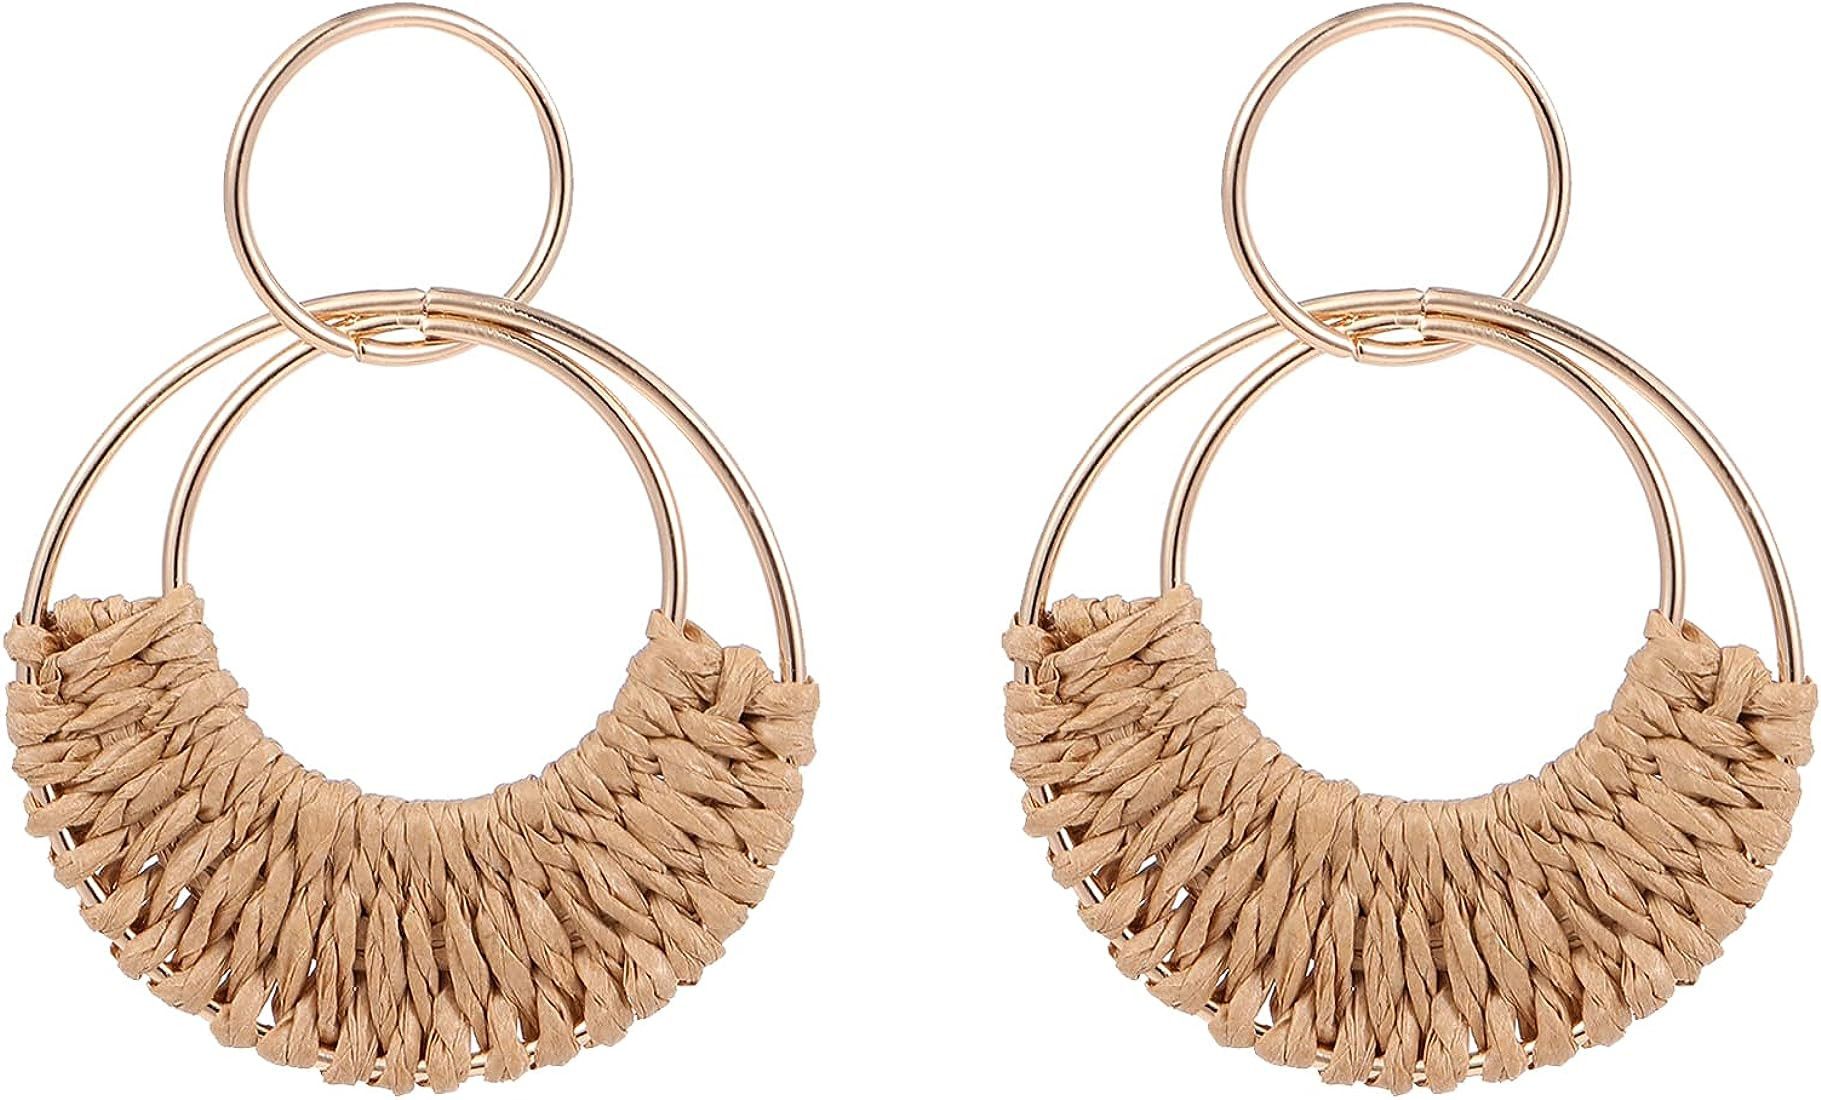 Rattan Hoop Earrings for Women Boho Summer Beach Raffia Earrings Lightweight Handmade Straw Wicke... | Amazon (US)